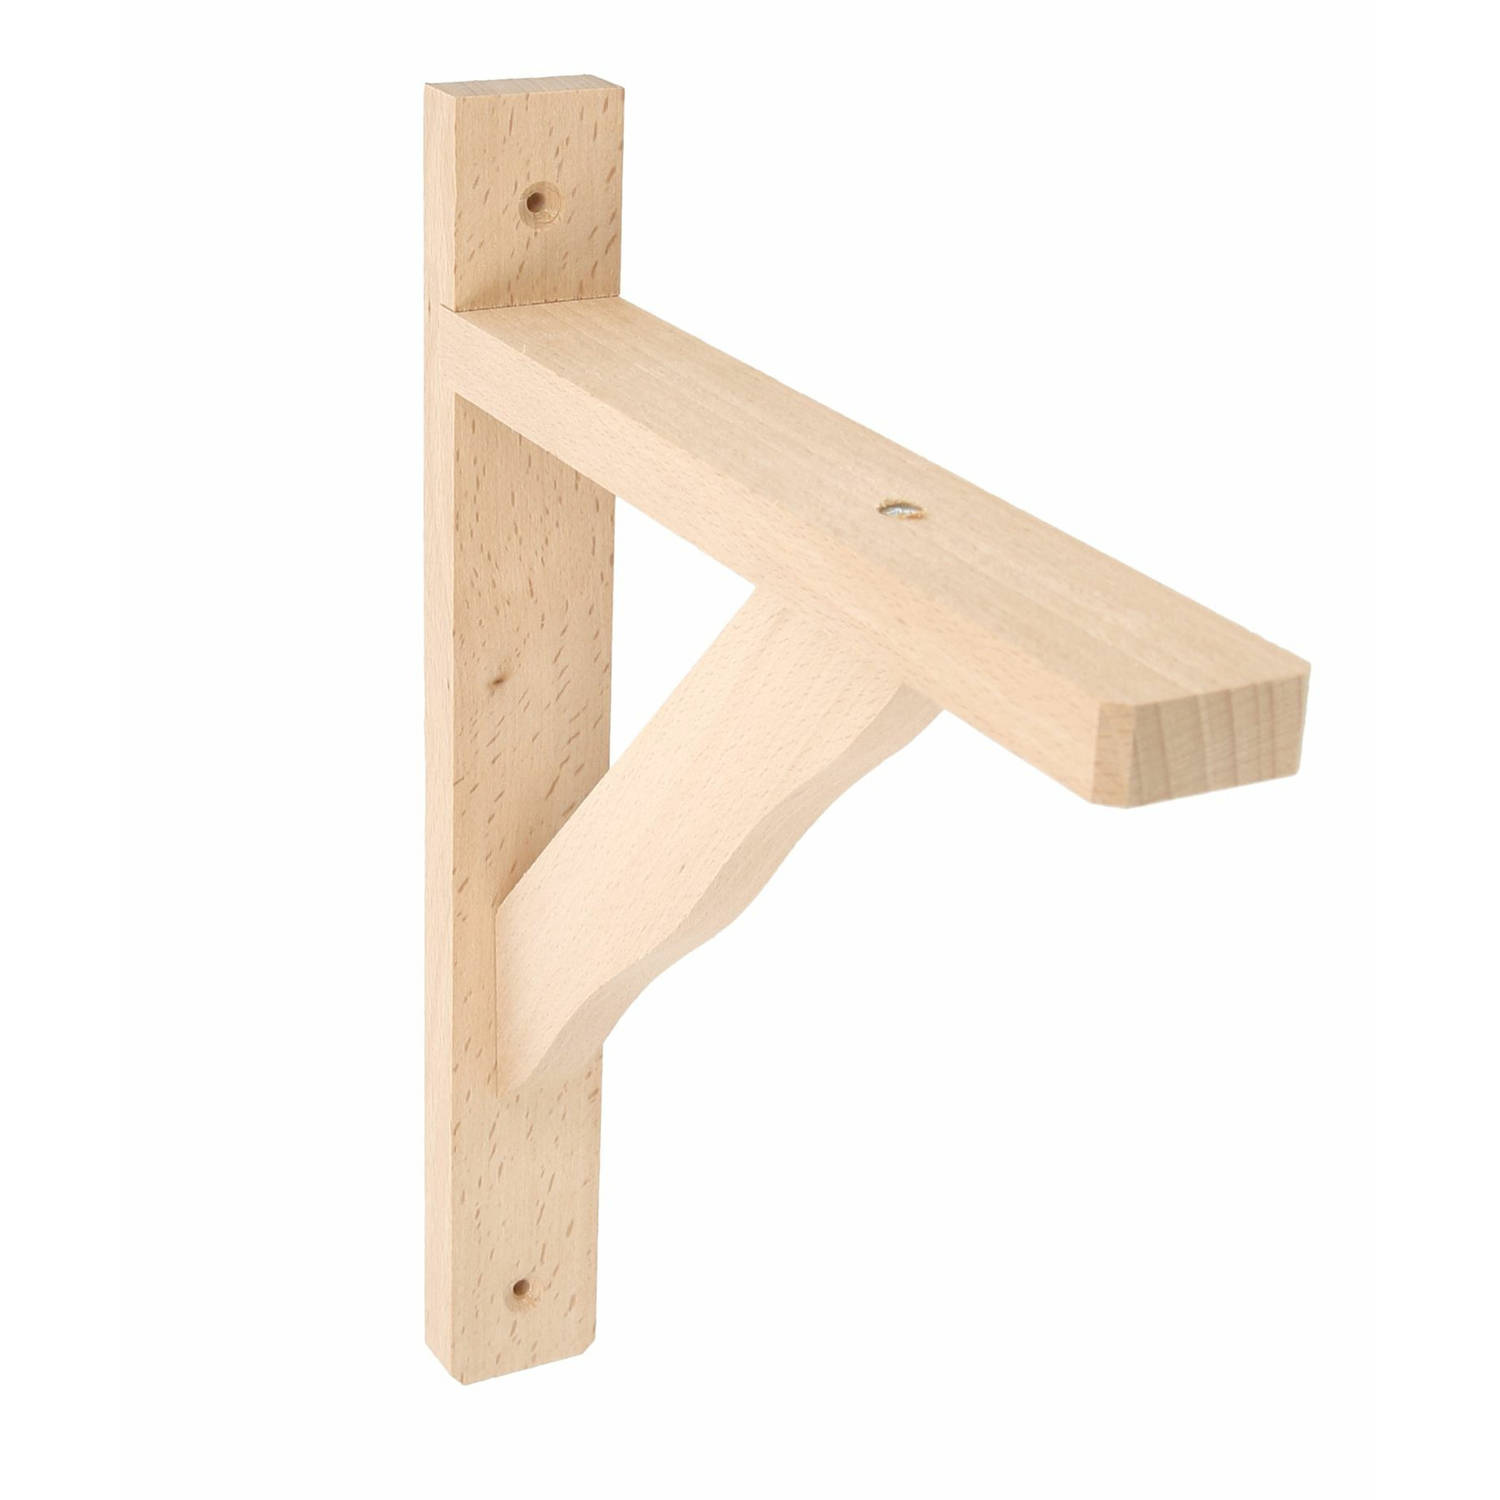 AMIG Plankdrager/planksteun van hout - lichtbruin - H280 x B230 mm - boekenplank steunen - tot 95 kg